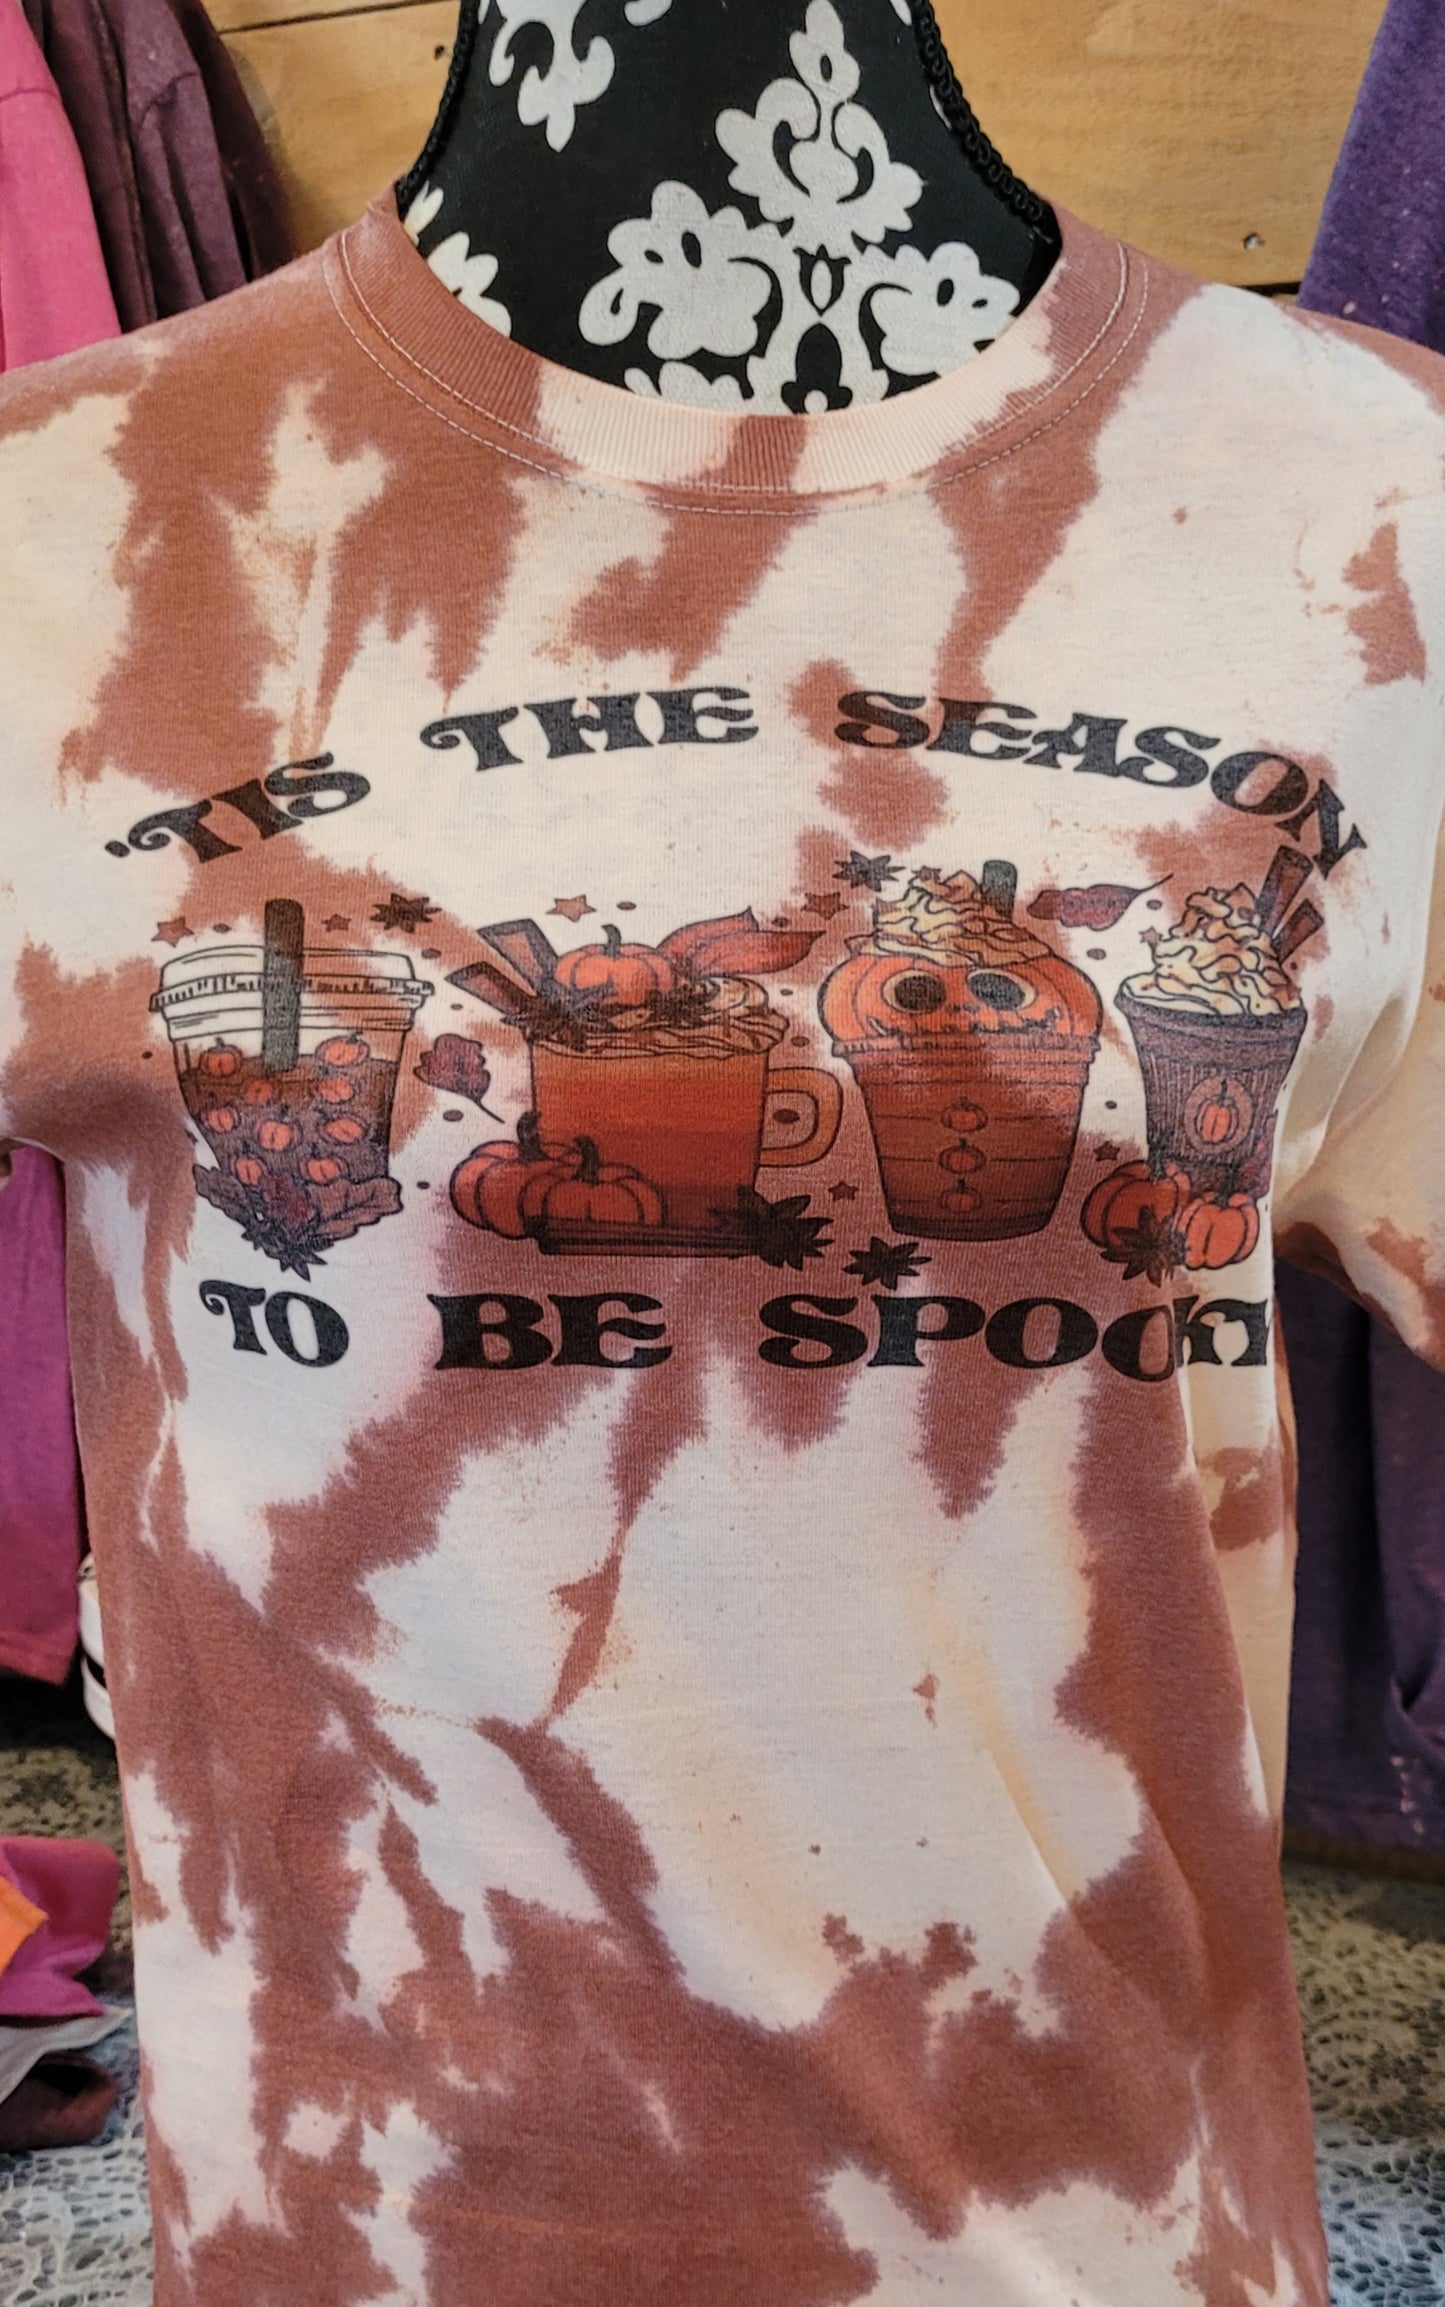 Tis the Season to be Spooky Tshirt - custom tie dye